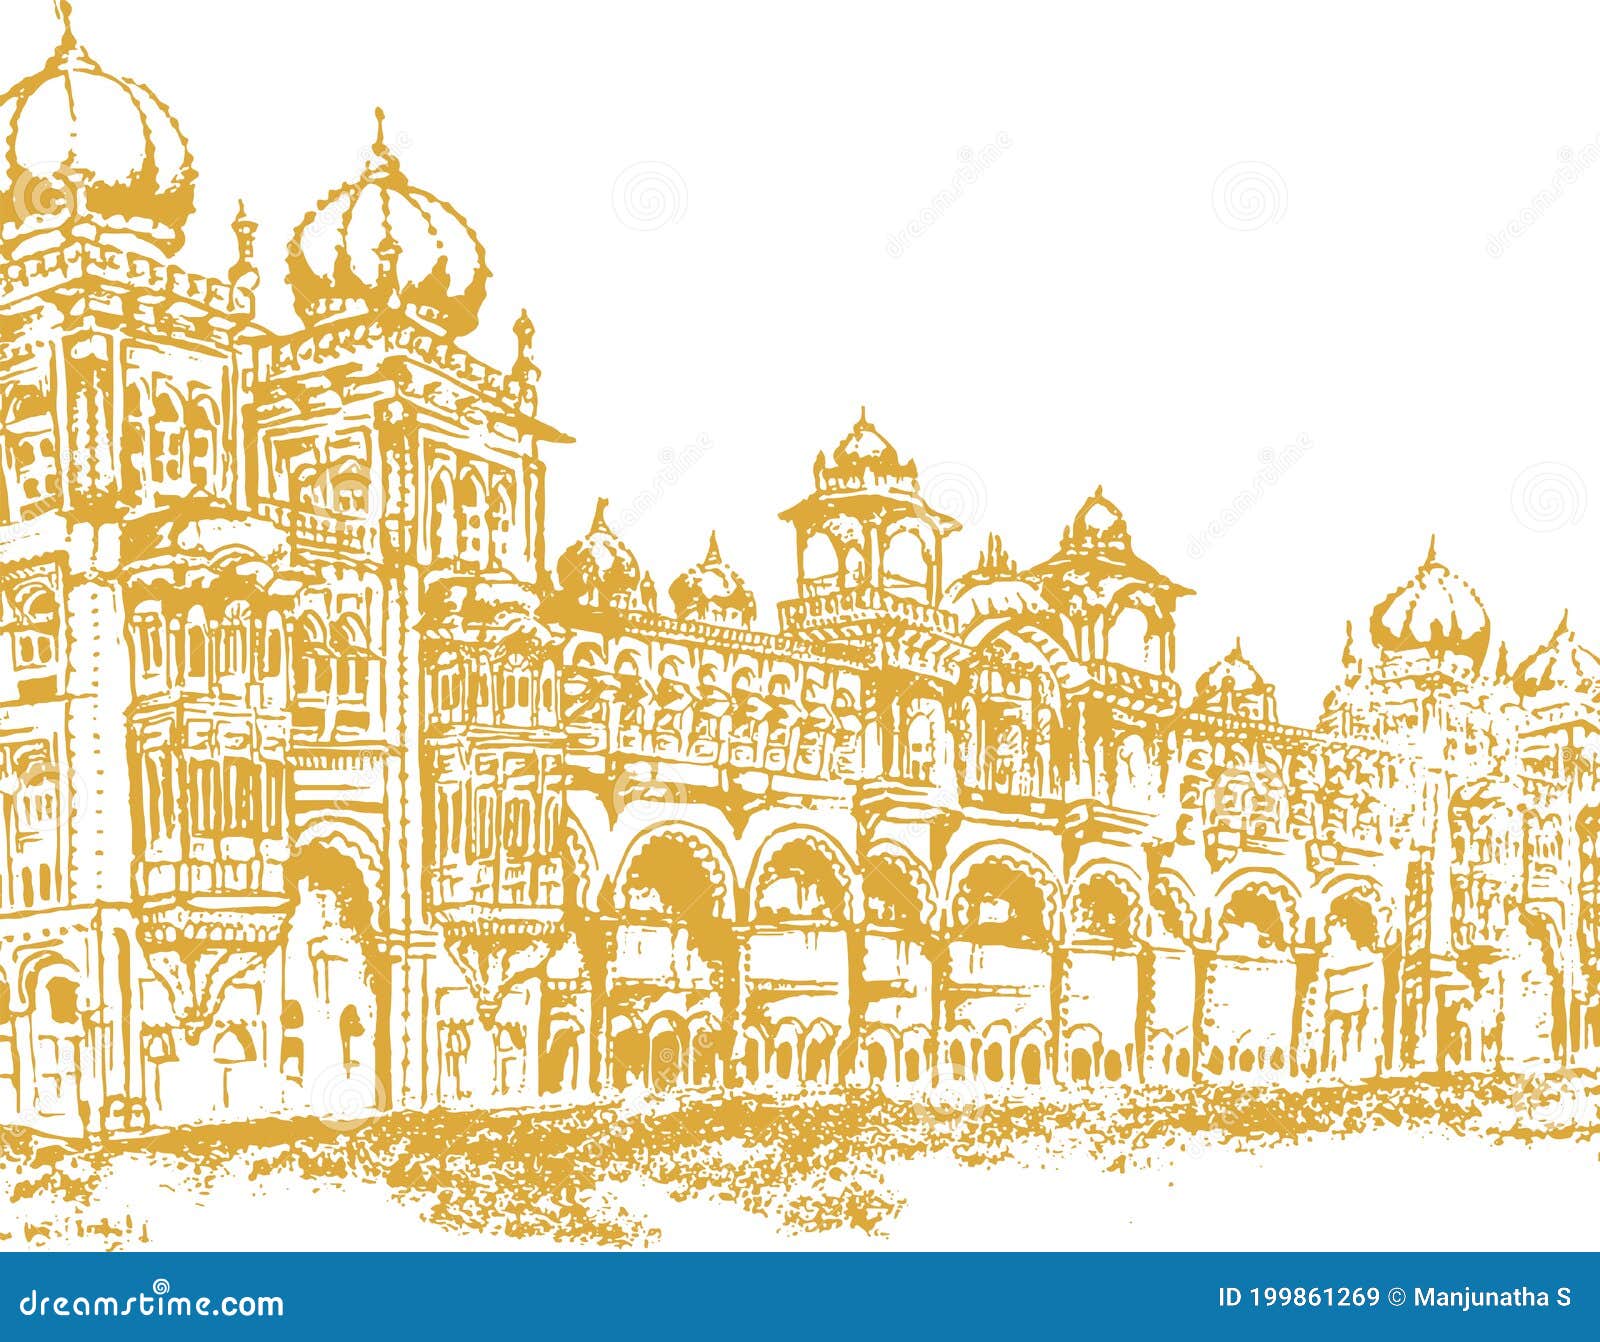 Mysore Palace Drawing